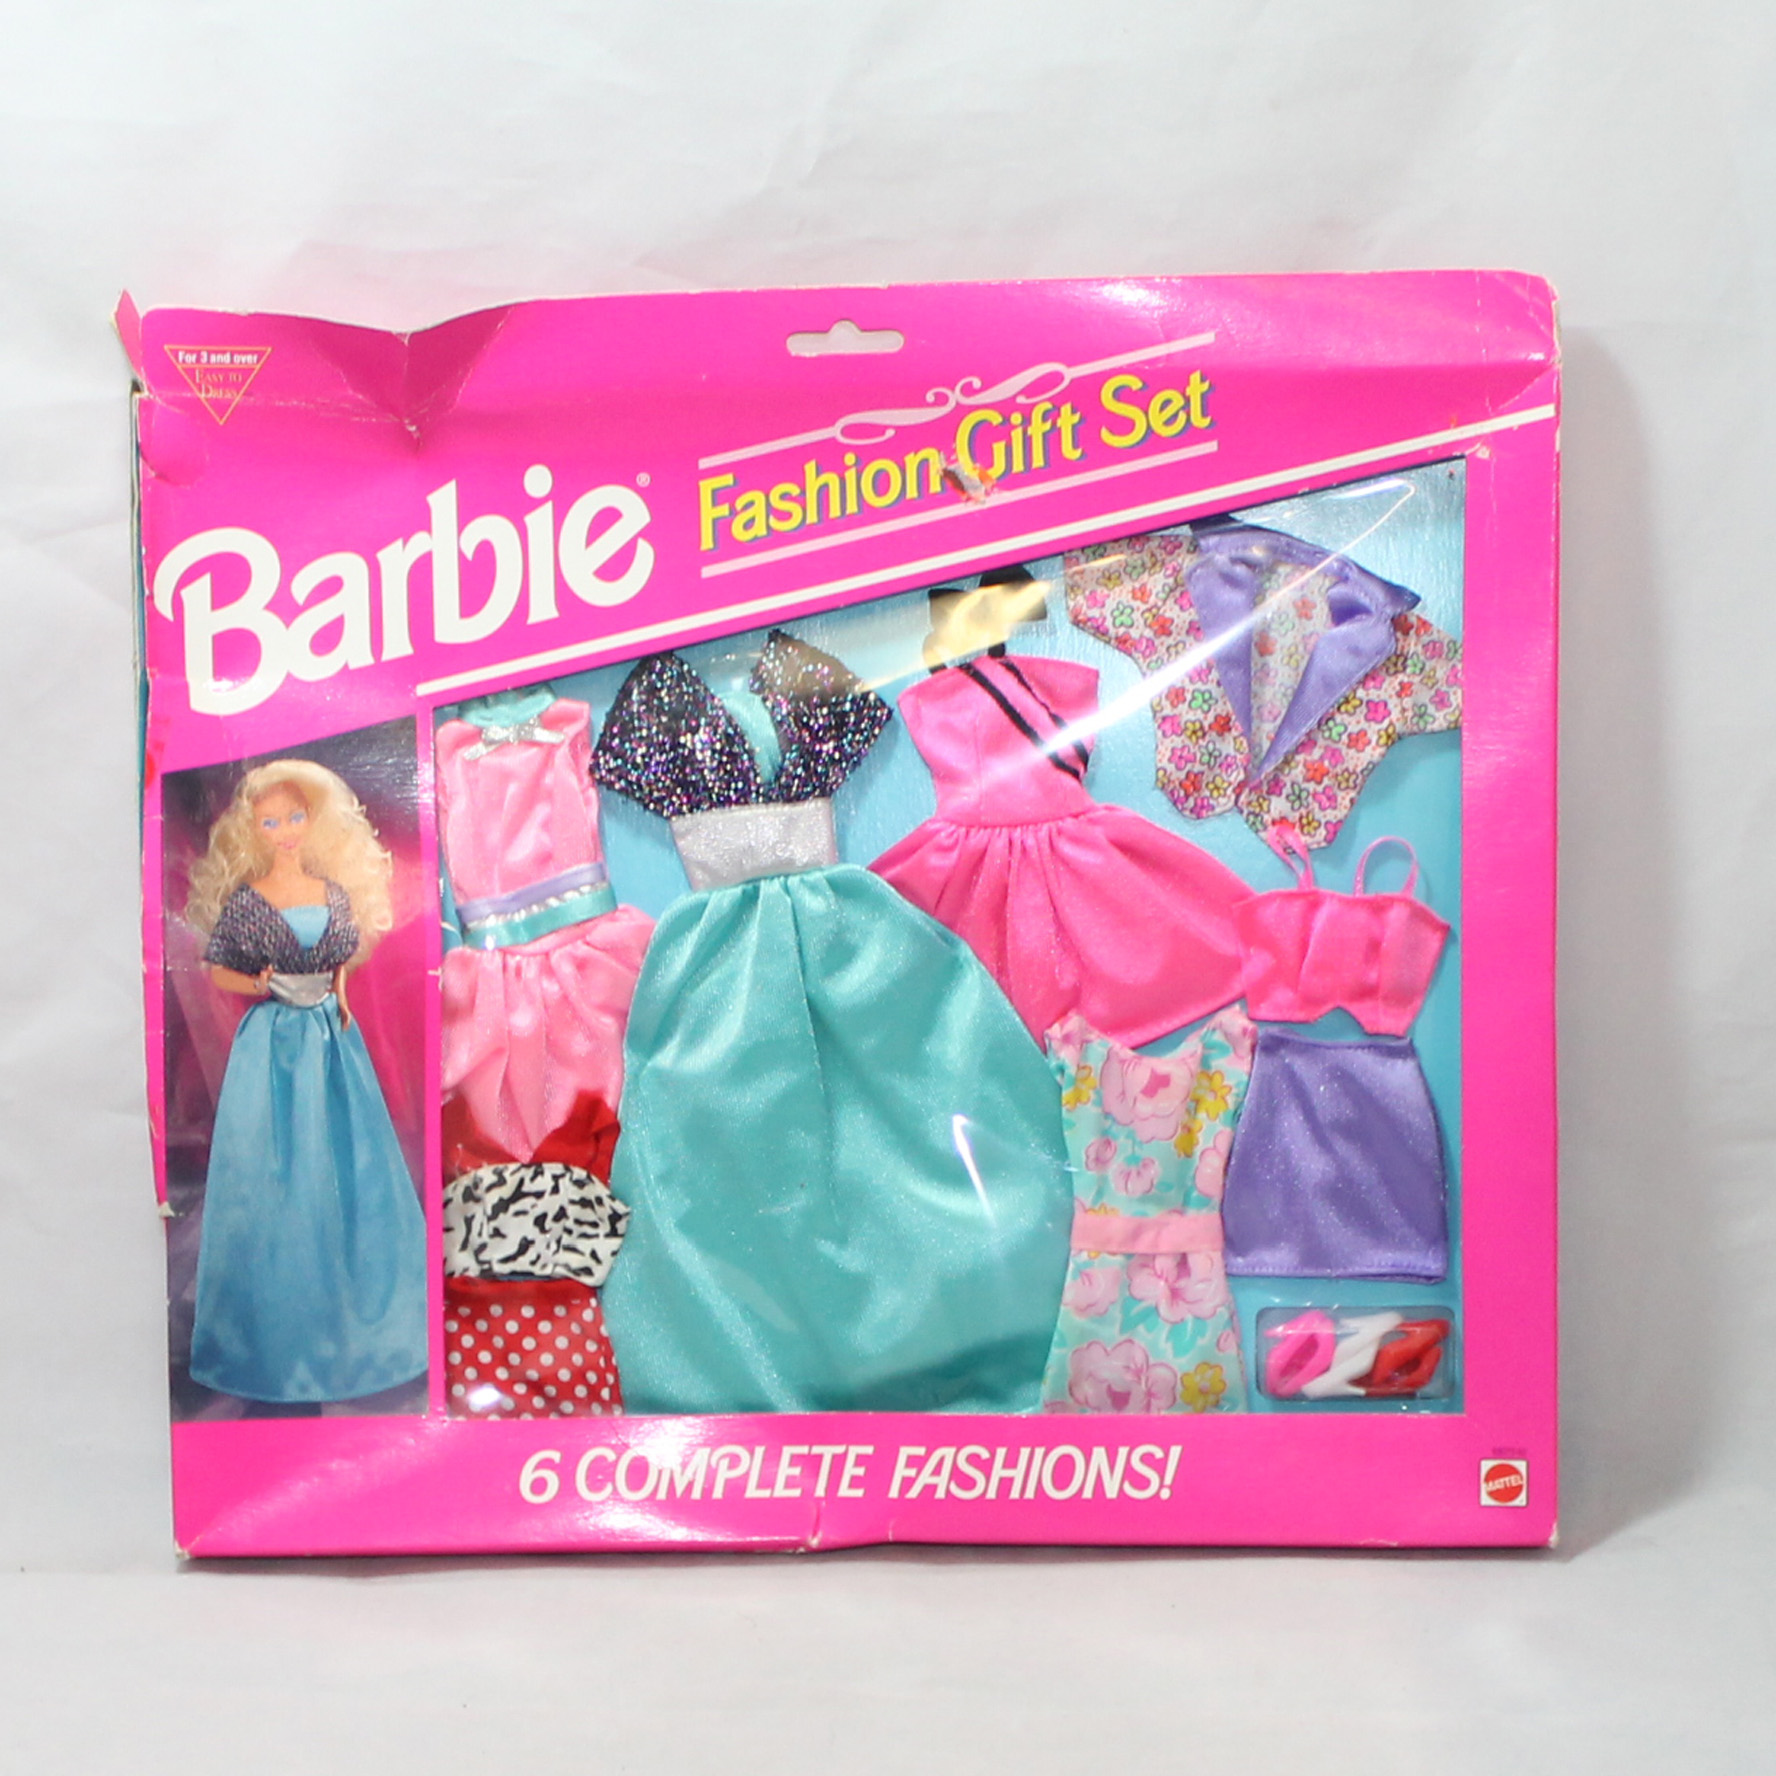 Barbie Fashion Gift Set 68073-92 CB00370 | eBay